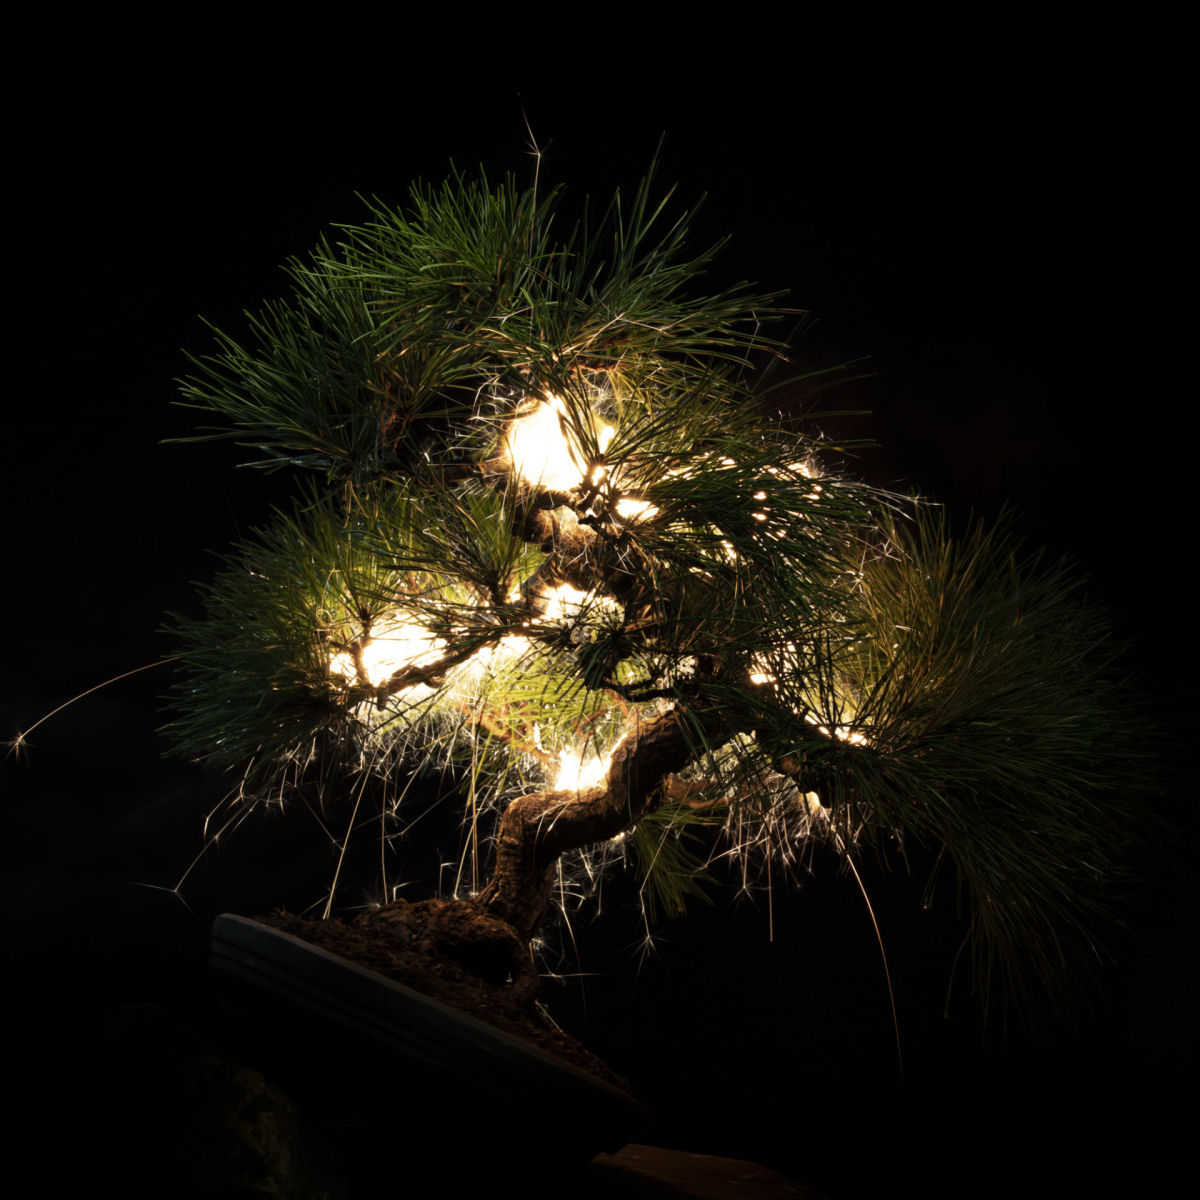 Rastros de luz iluminam bonsais esculturais em fotos de longa exposio 08